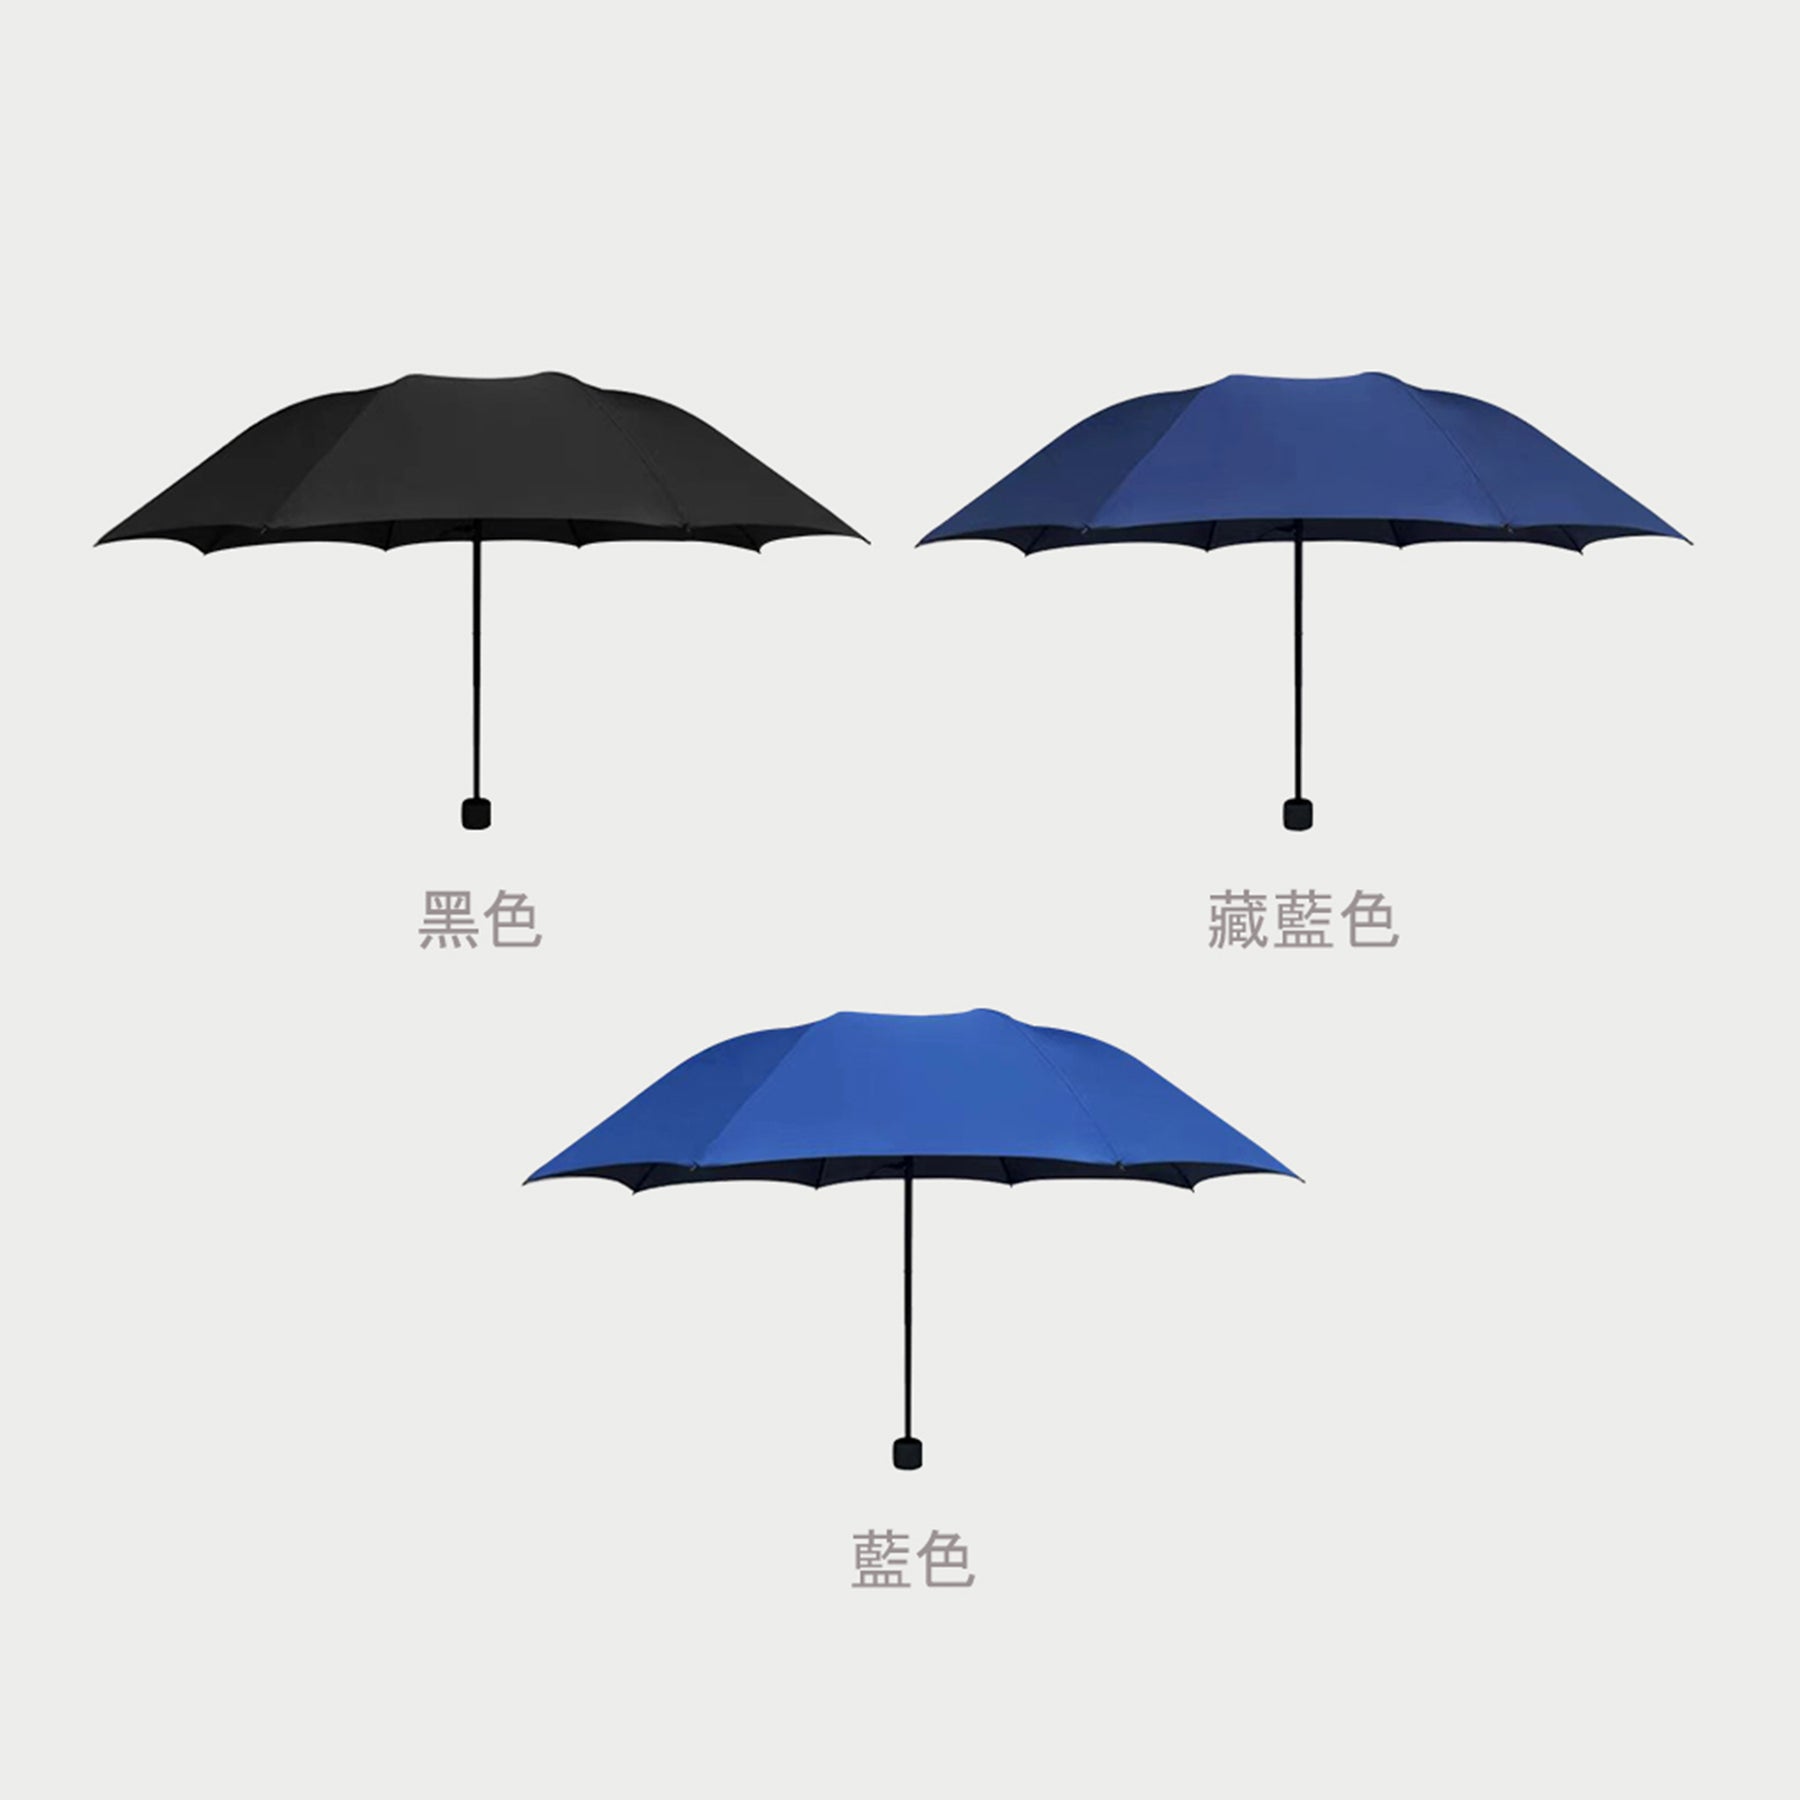 【Fan's Club系列】雨傘訂製 來圖訂製雨傘  kpop周邊產品訂製